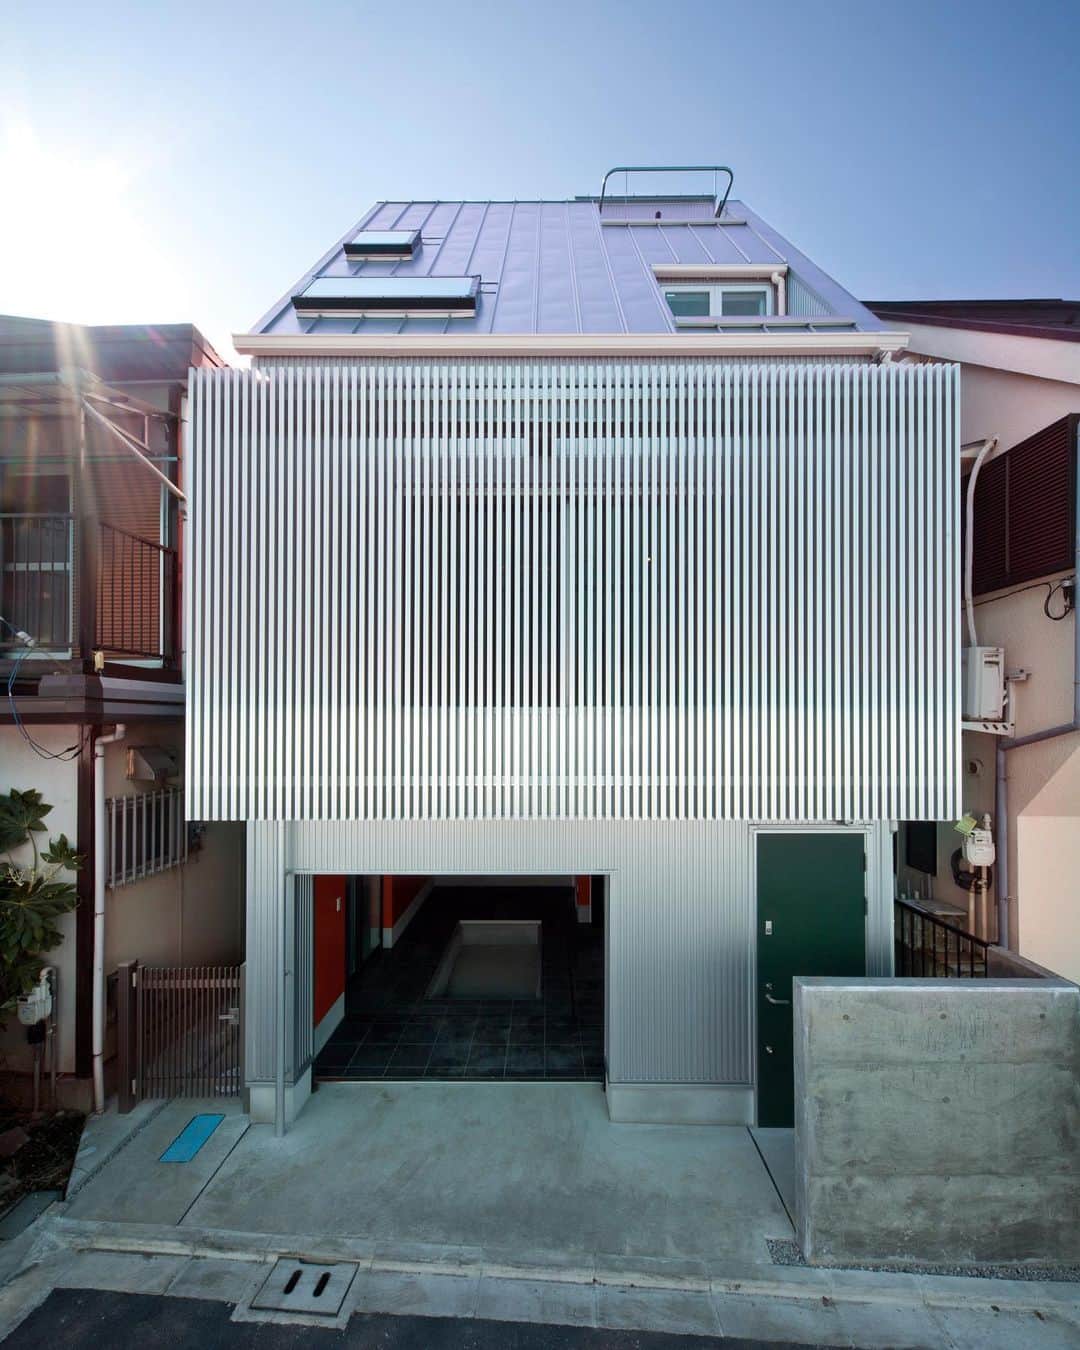 ザウス住宅プロデュースのインスタグラム：「…掘り込みピットがある狭小ガレージハウス：東京    設計：濱里豊和建築事務所 撮影：アトリエ・フロール株式会社    #garagehouse#garage#car #home#architecture#design#zaus #濱里豊和 #ザウス#ガレージハウス#建築#建築家との家づくり#暮らしを楽しむ」